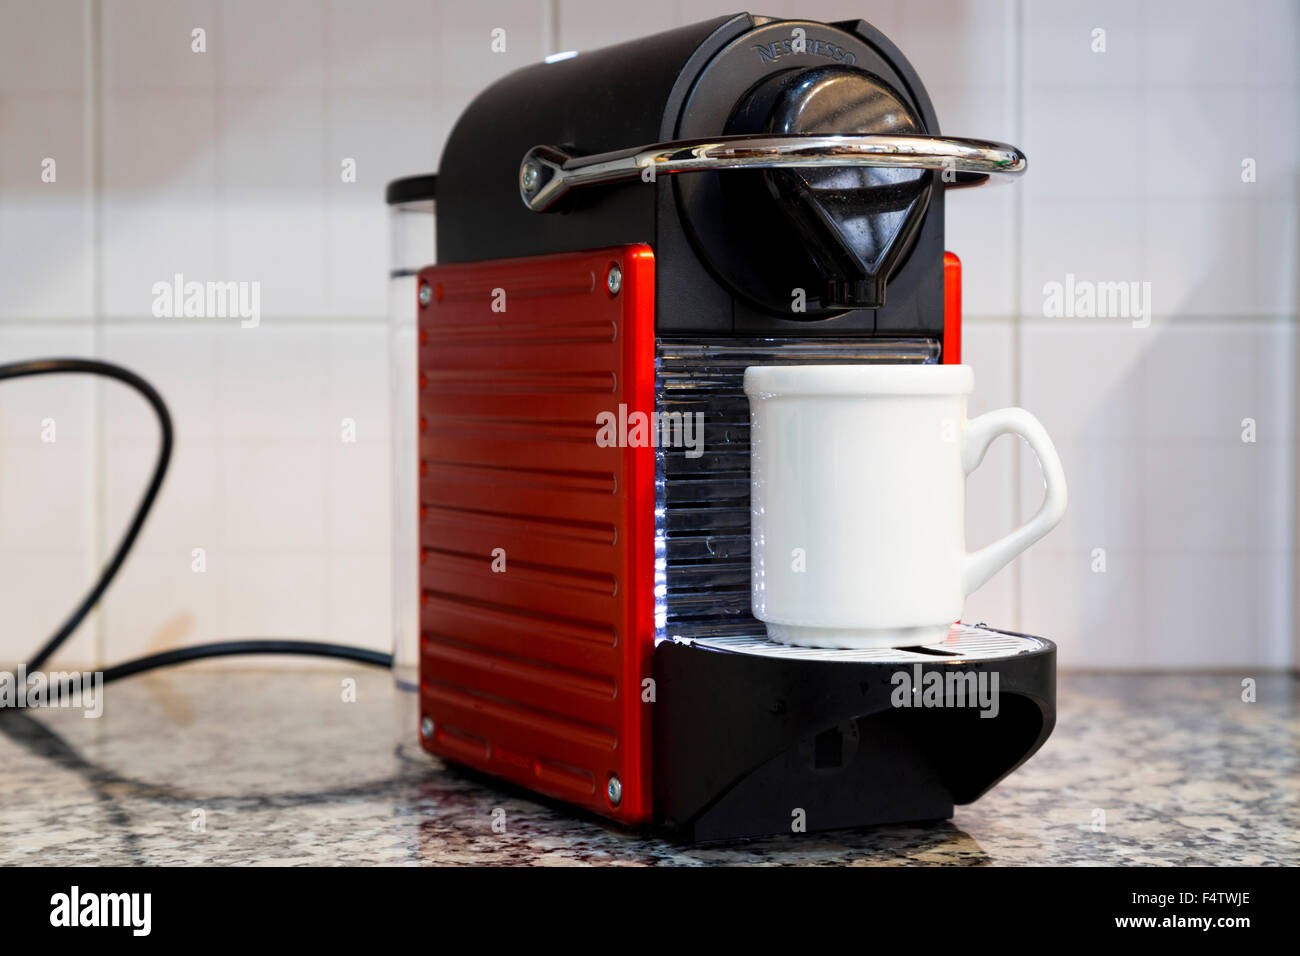 Macchina da caffè Nespresso Foto stock - Alamy